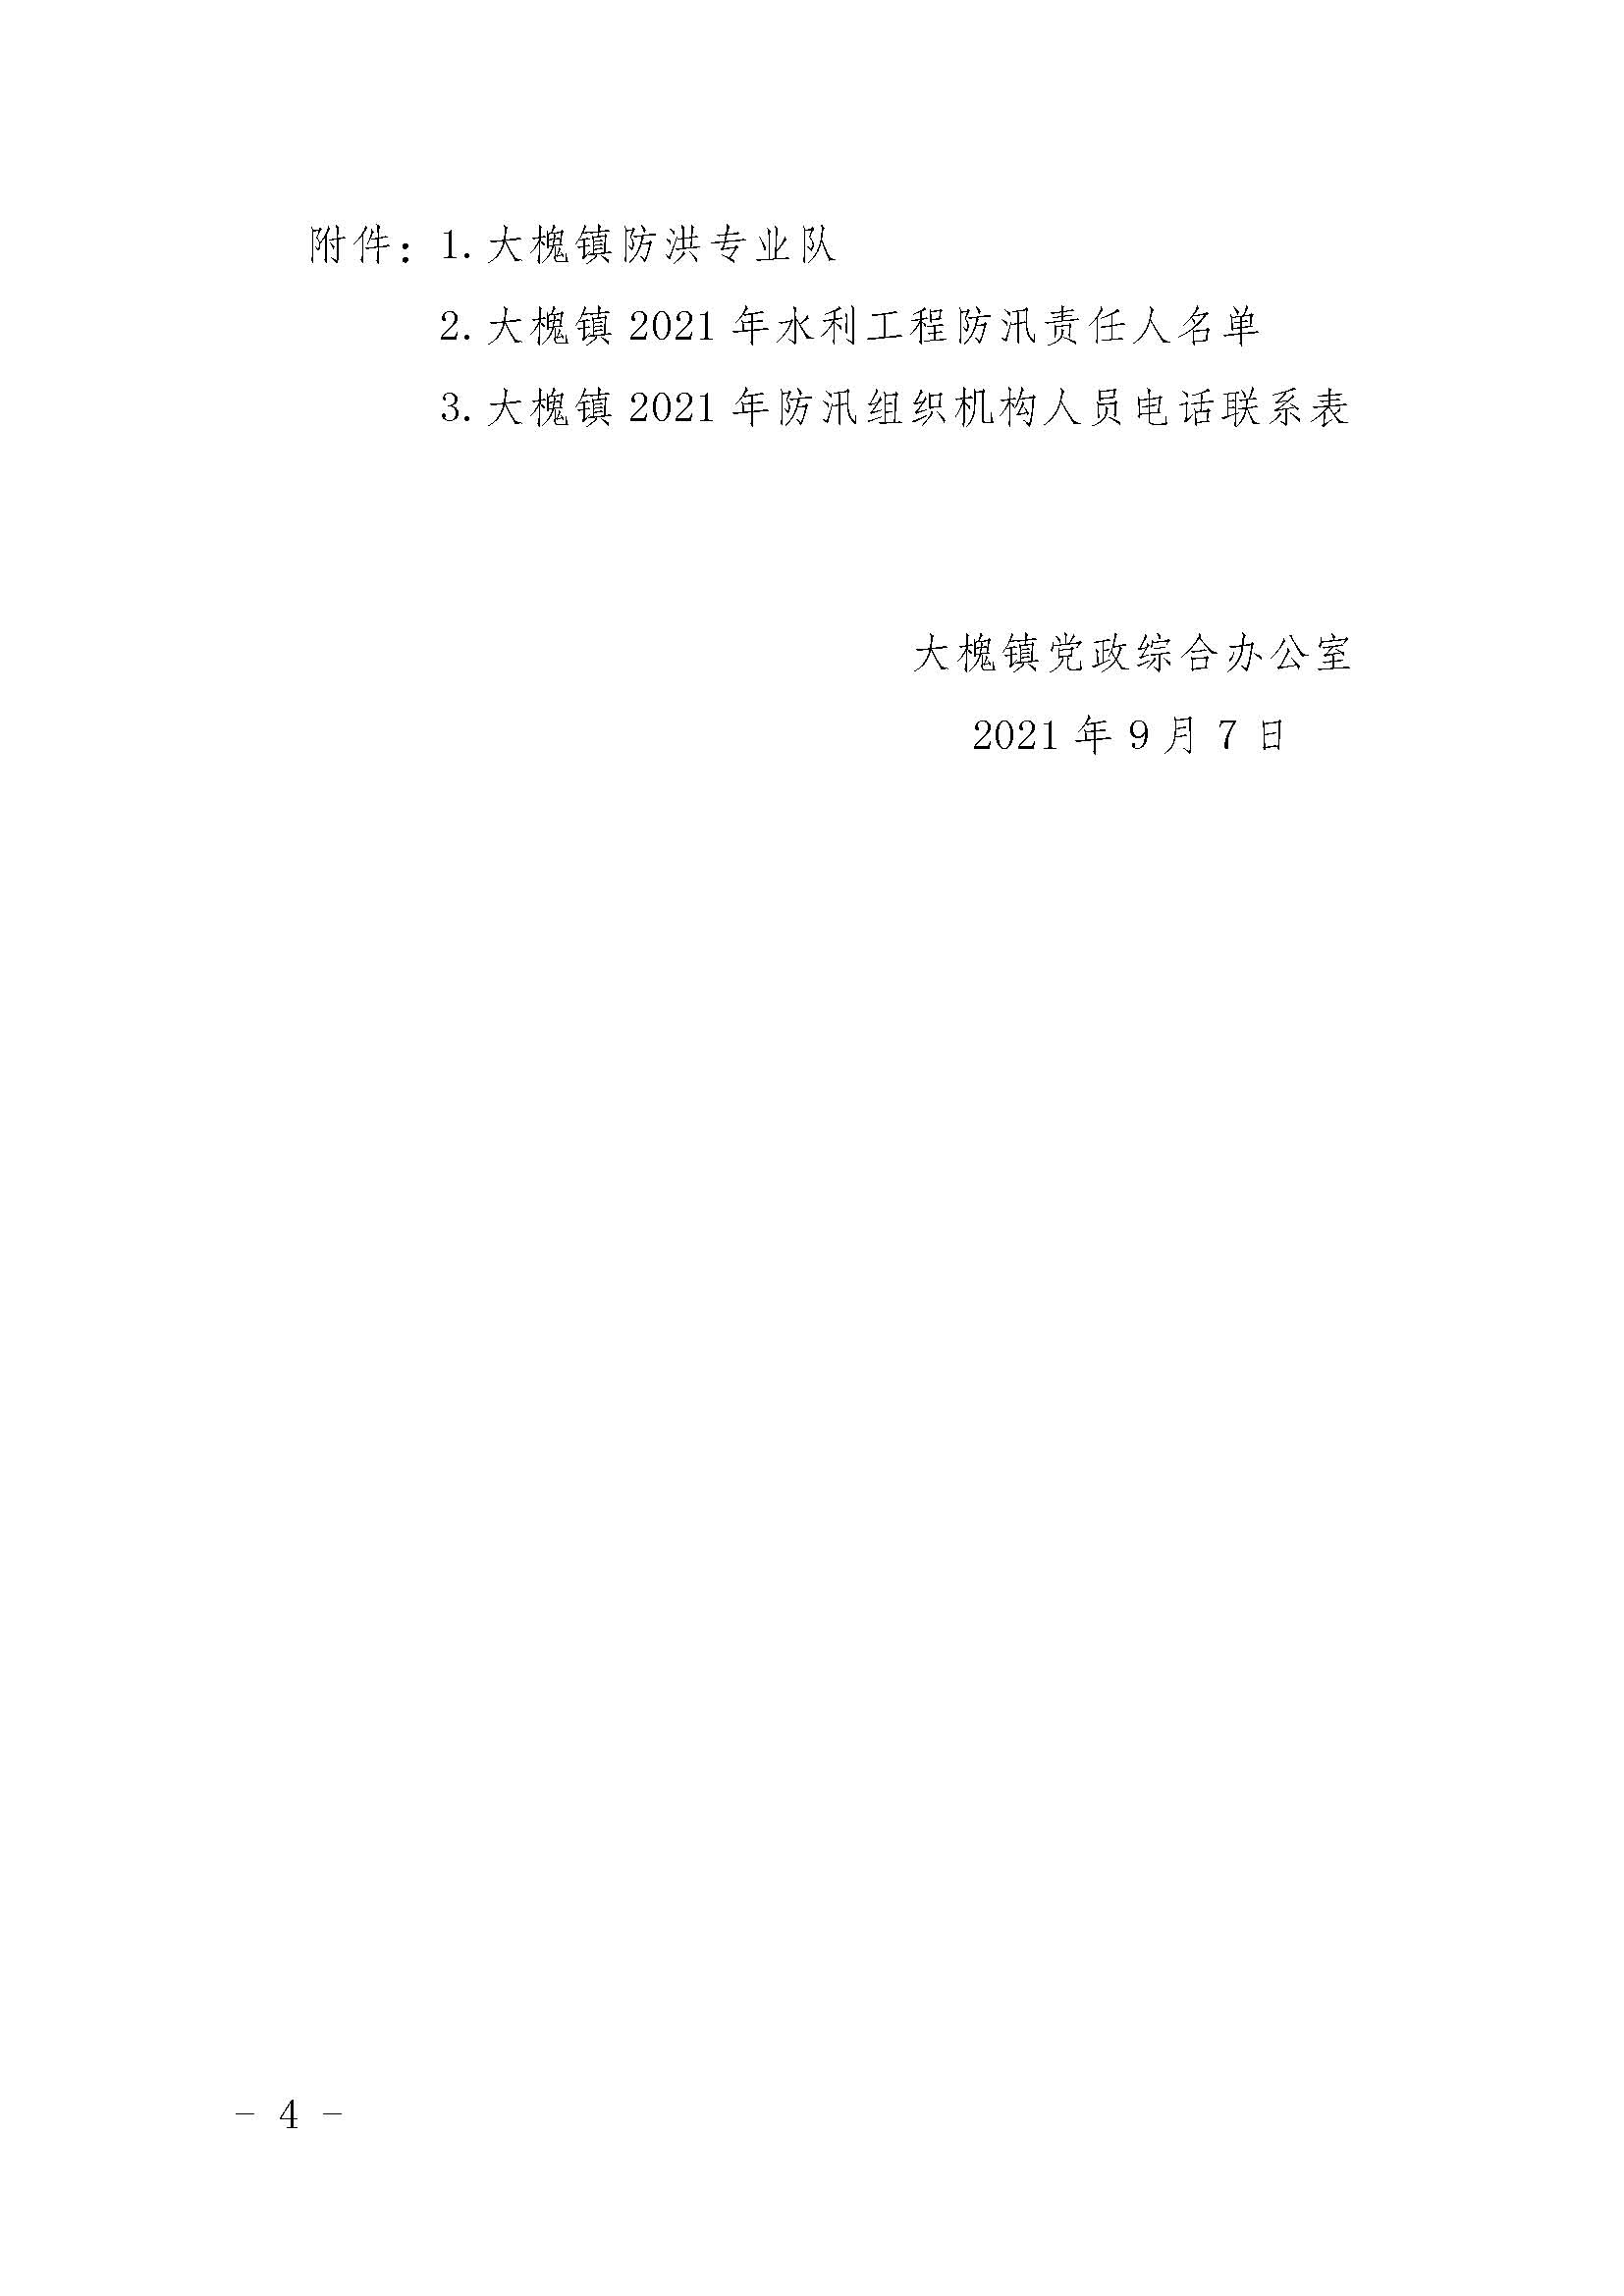 2021.9.7关于调整大槐镇三防工作领导小组组成人员的通知_页面_04.jpg